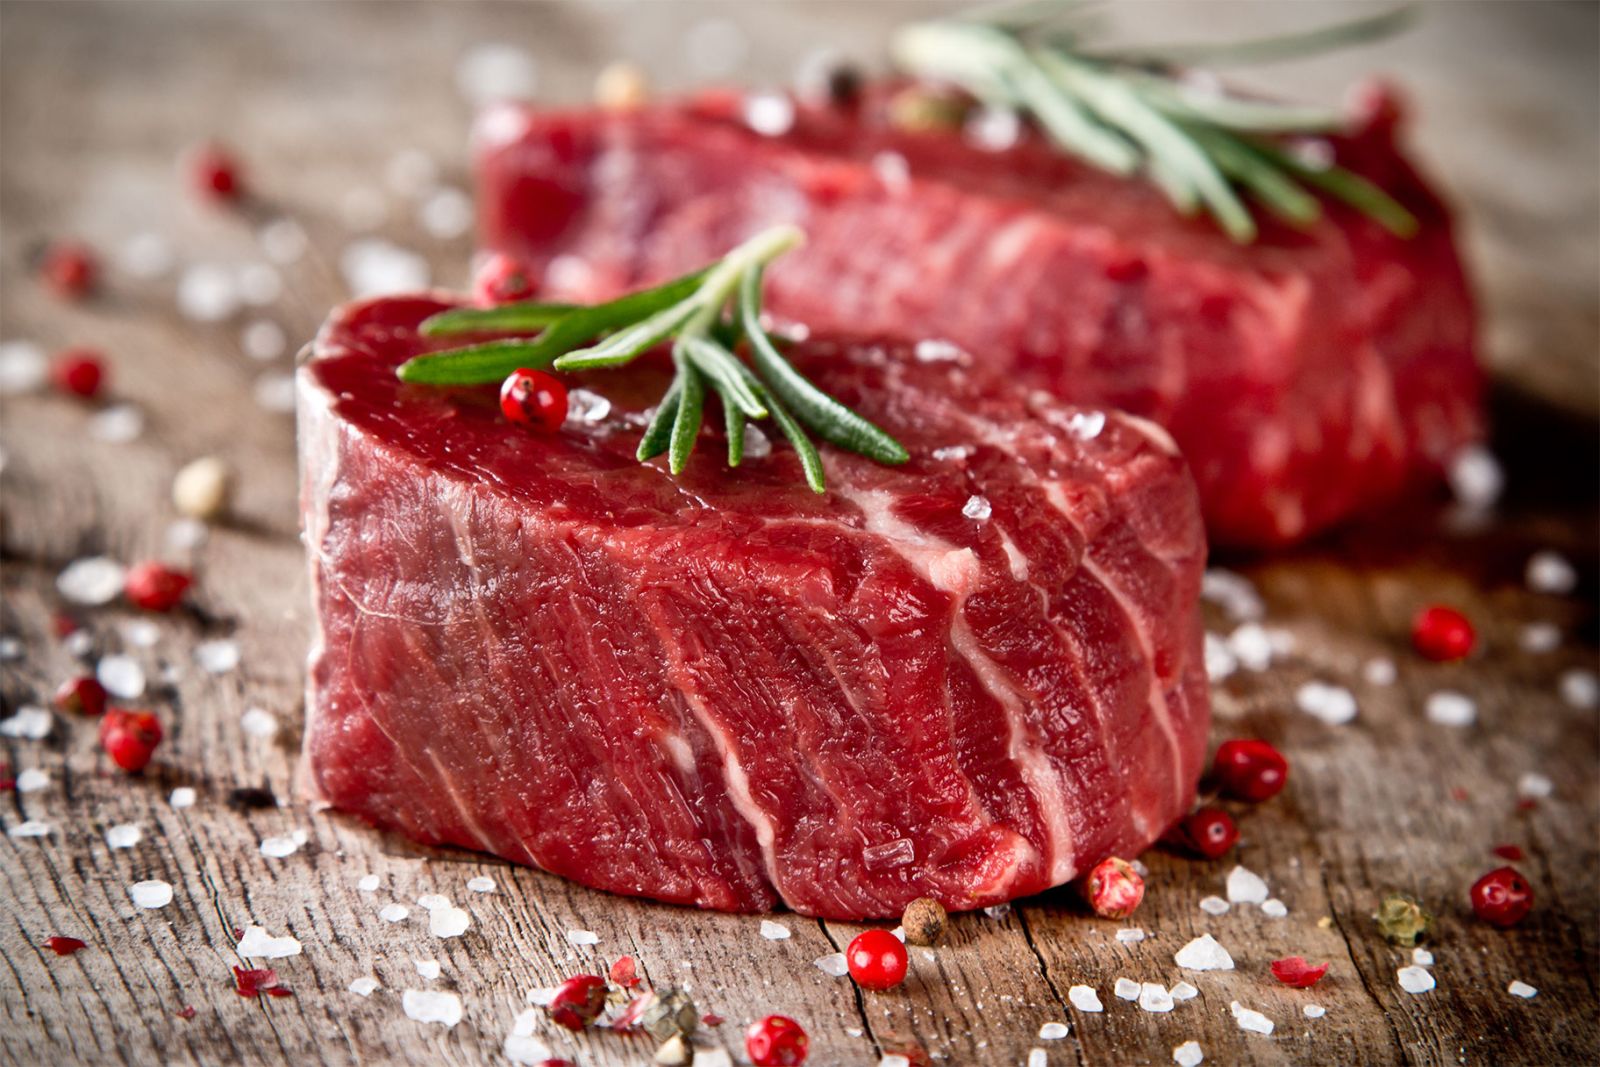 Một số lưu ý khi tiêu thụ thịt bò để hấp thụ an toàn và đạt hiệu quả tối ưu